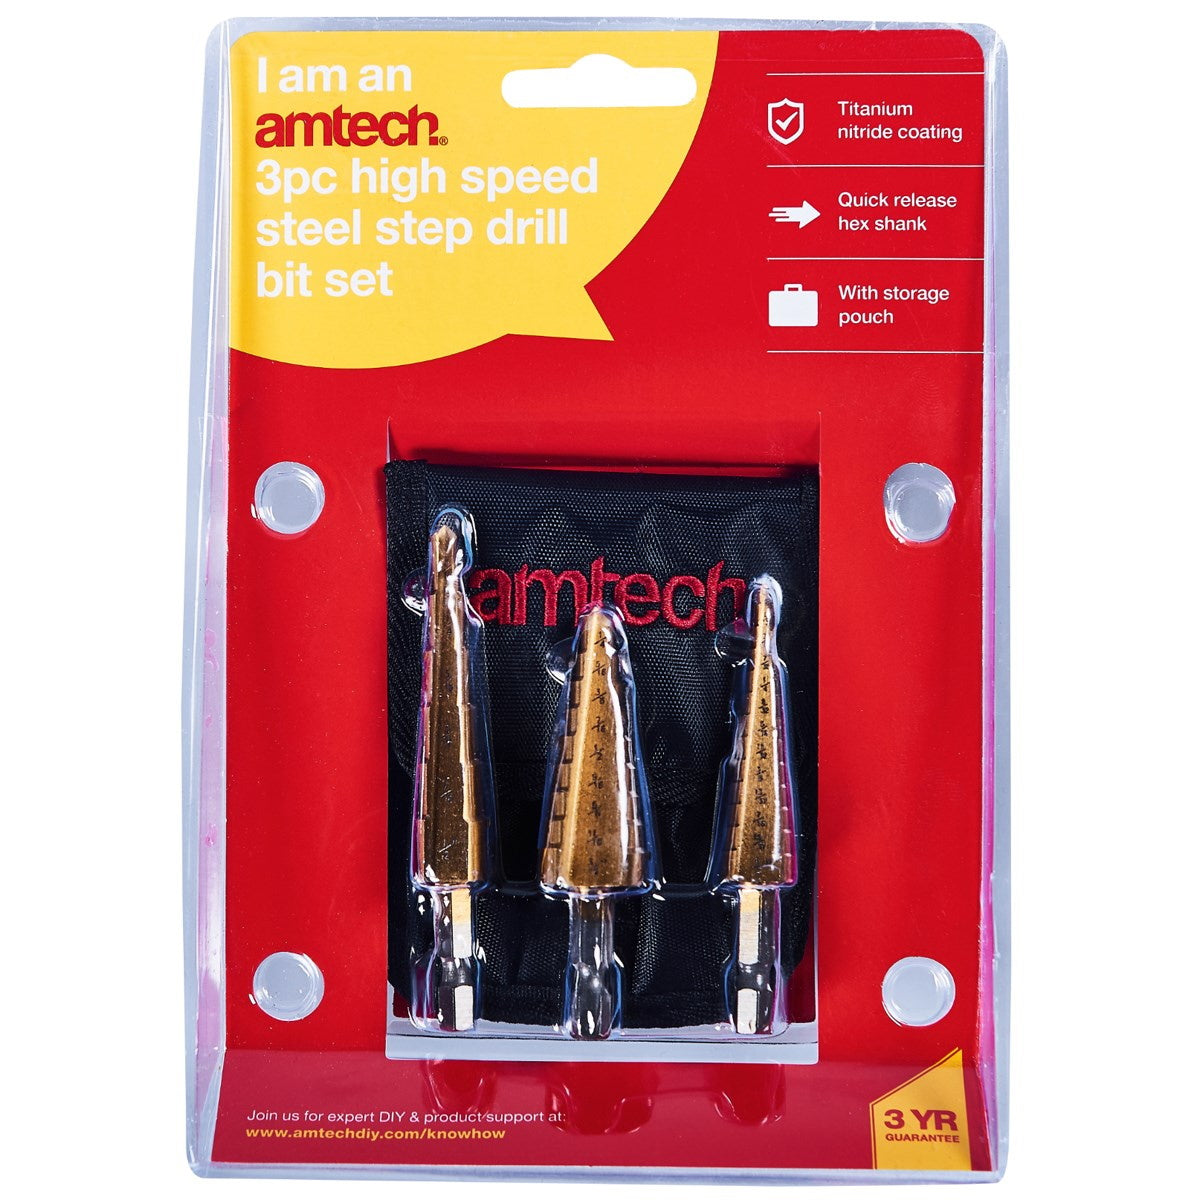 Amtech F0785 High Speed Steel Step Drill 3Pce Bit Set - Premium Drill Bits HSS from DK Tools - Just $11.95! Shop now at W Hurst & Son (IW) Ltd